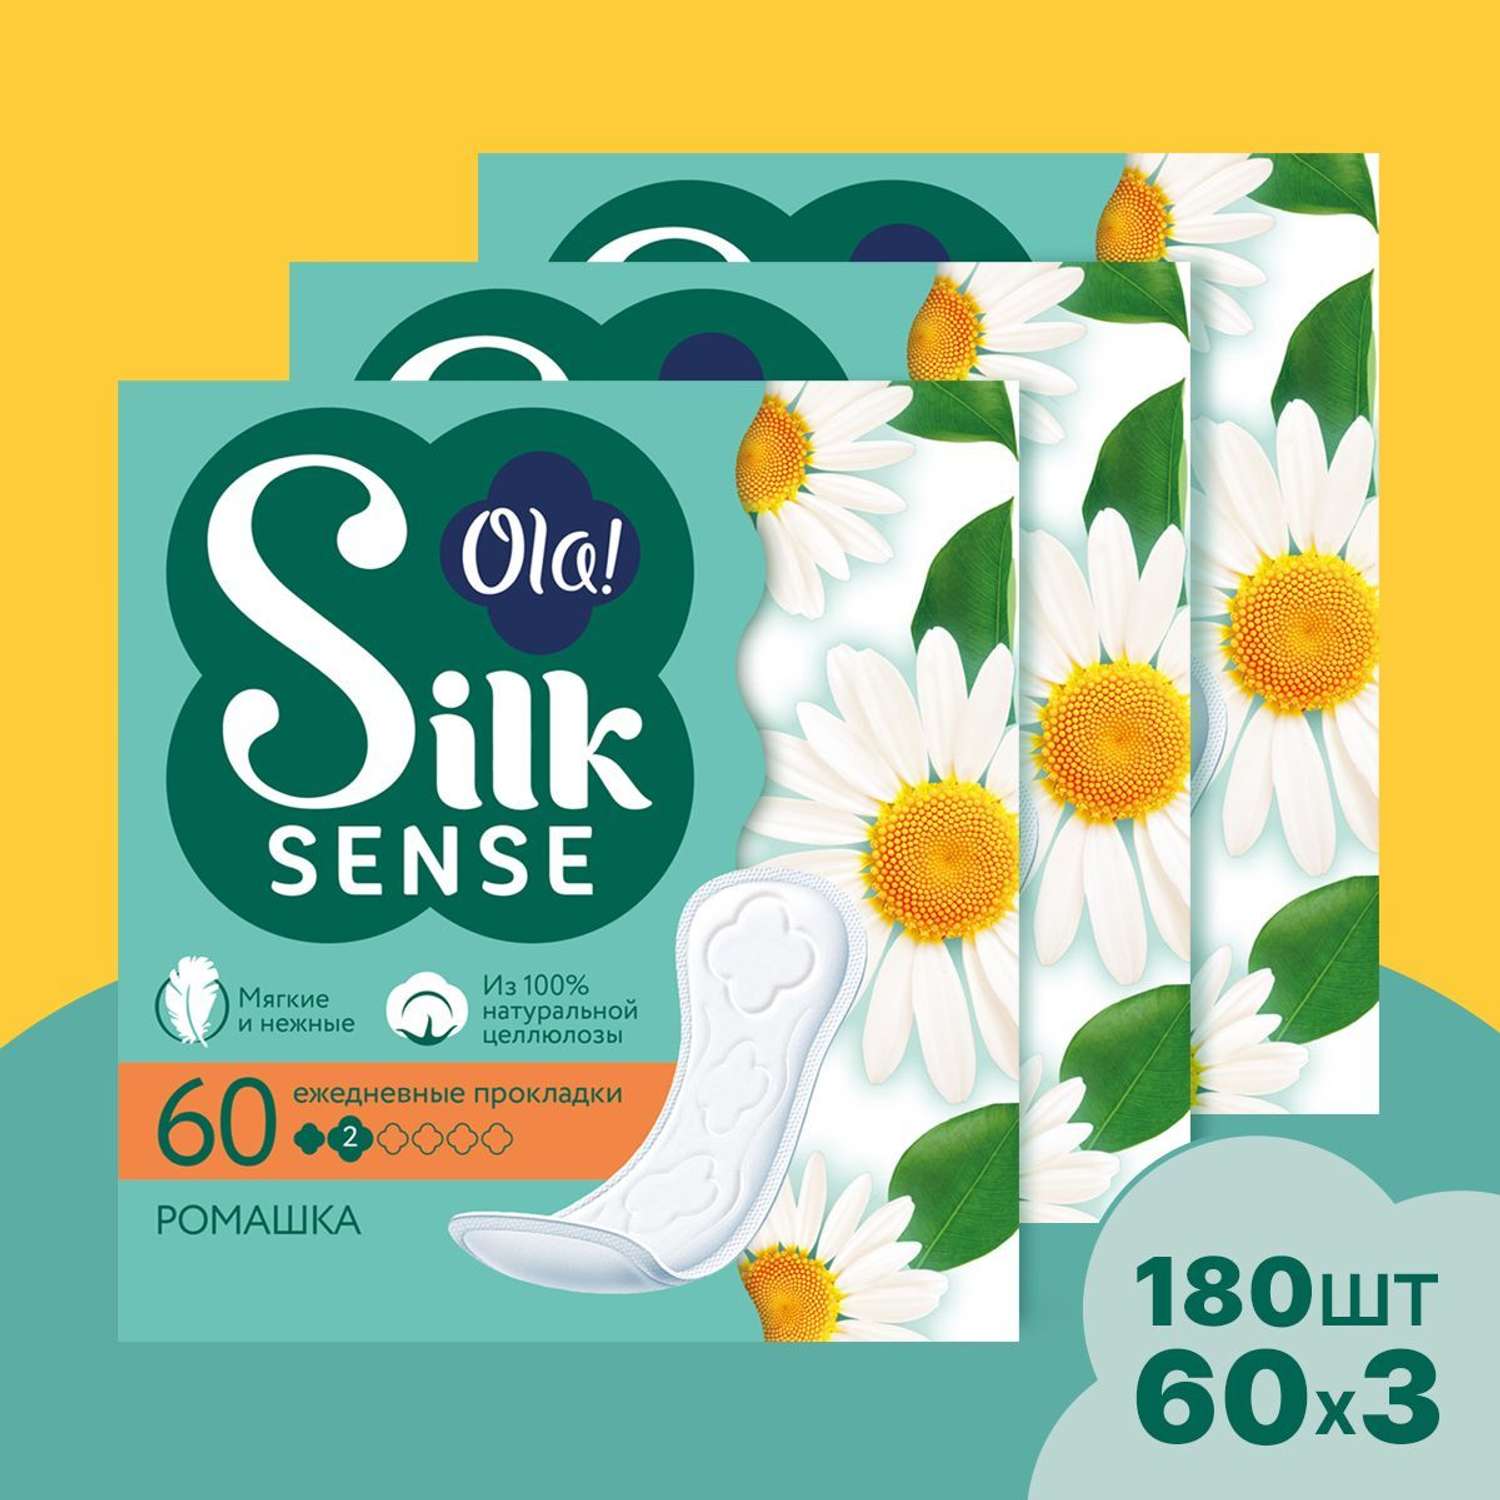 Ежедневные прокладки Ola! Silk Sense мягкие аромат Ромашка 180 шт 3уп по 60 шт - фото 1